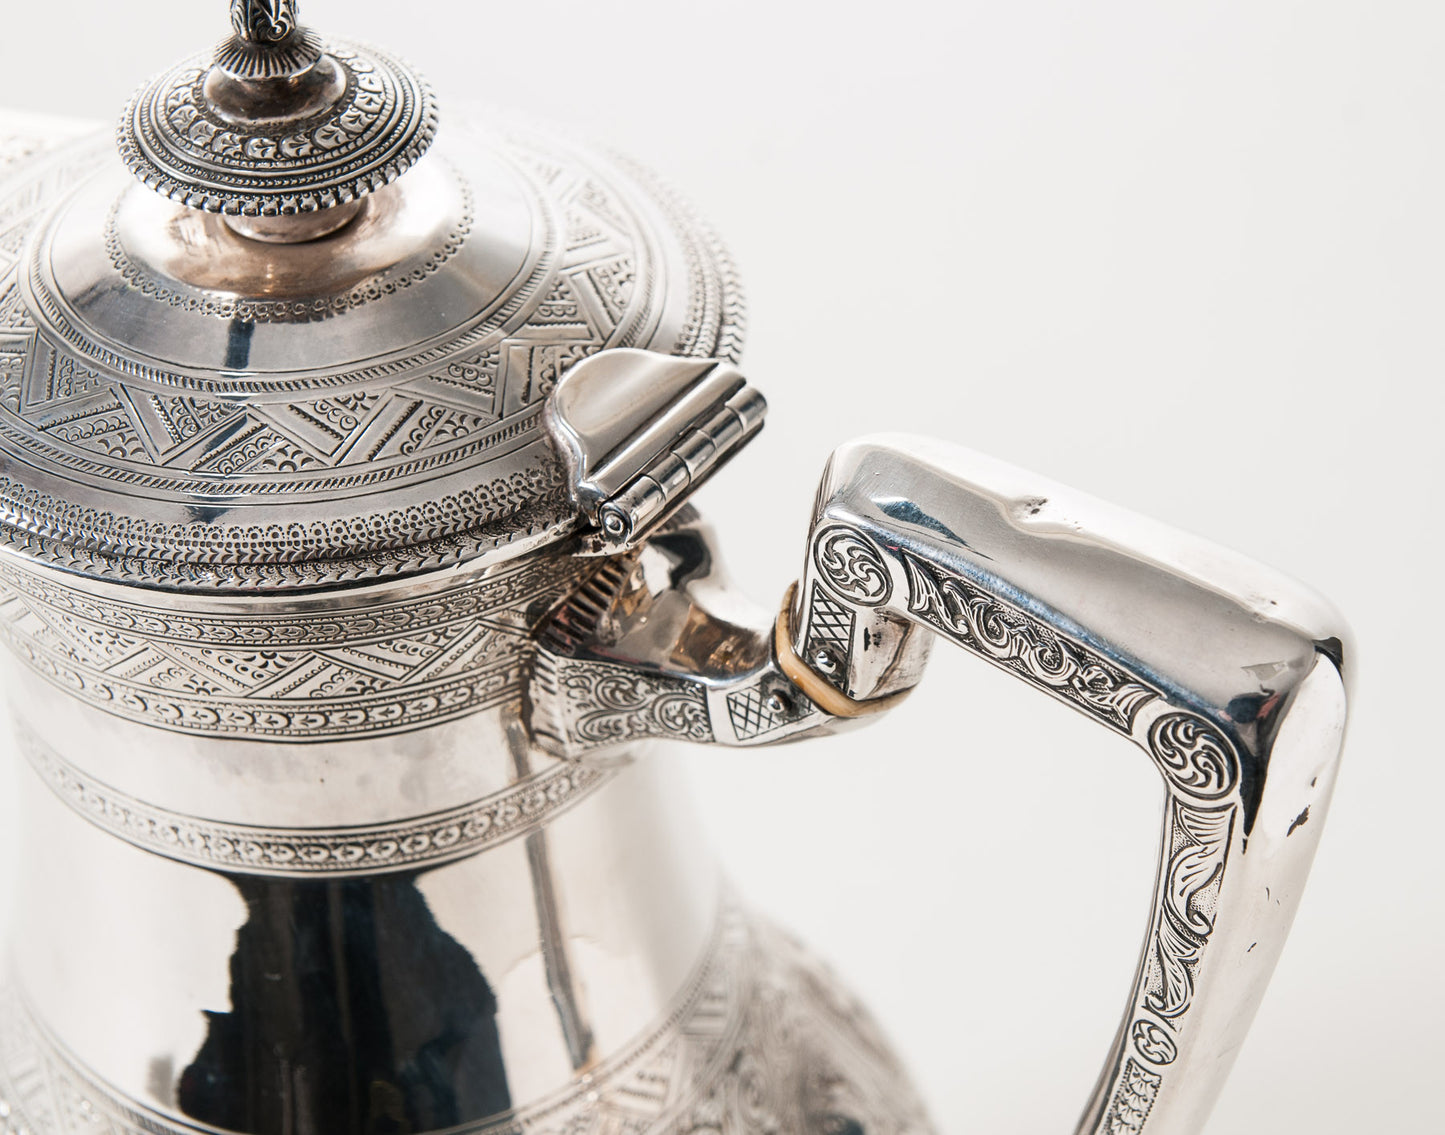 Antique Scottish Silver Zodiac Coffee Pot - Hamilton & Inches Edinburgh 1876 (Code 0529)